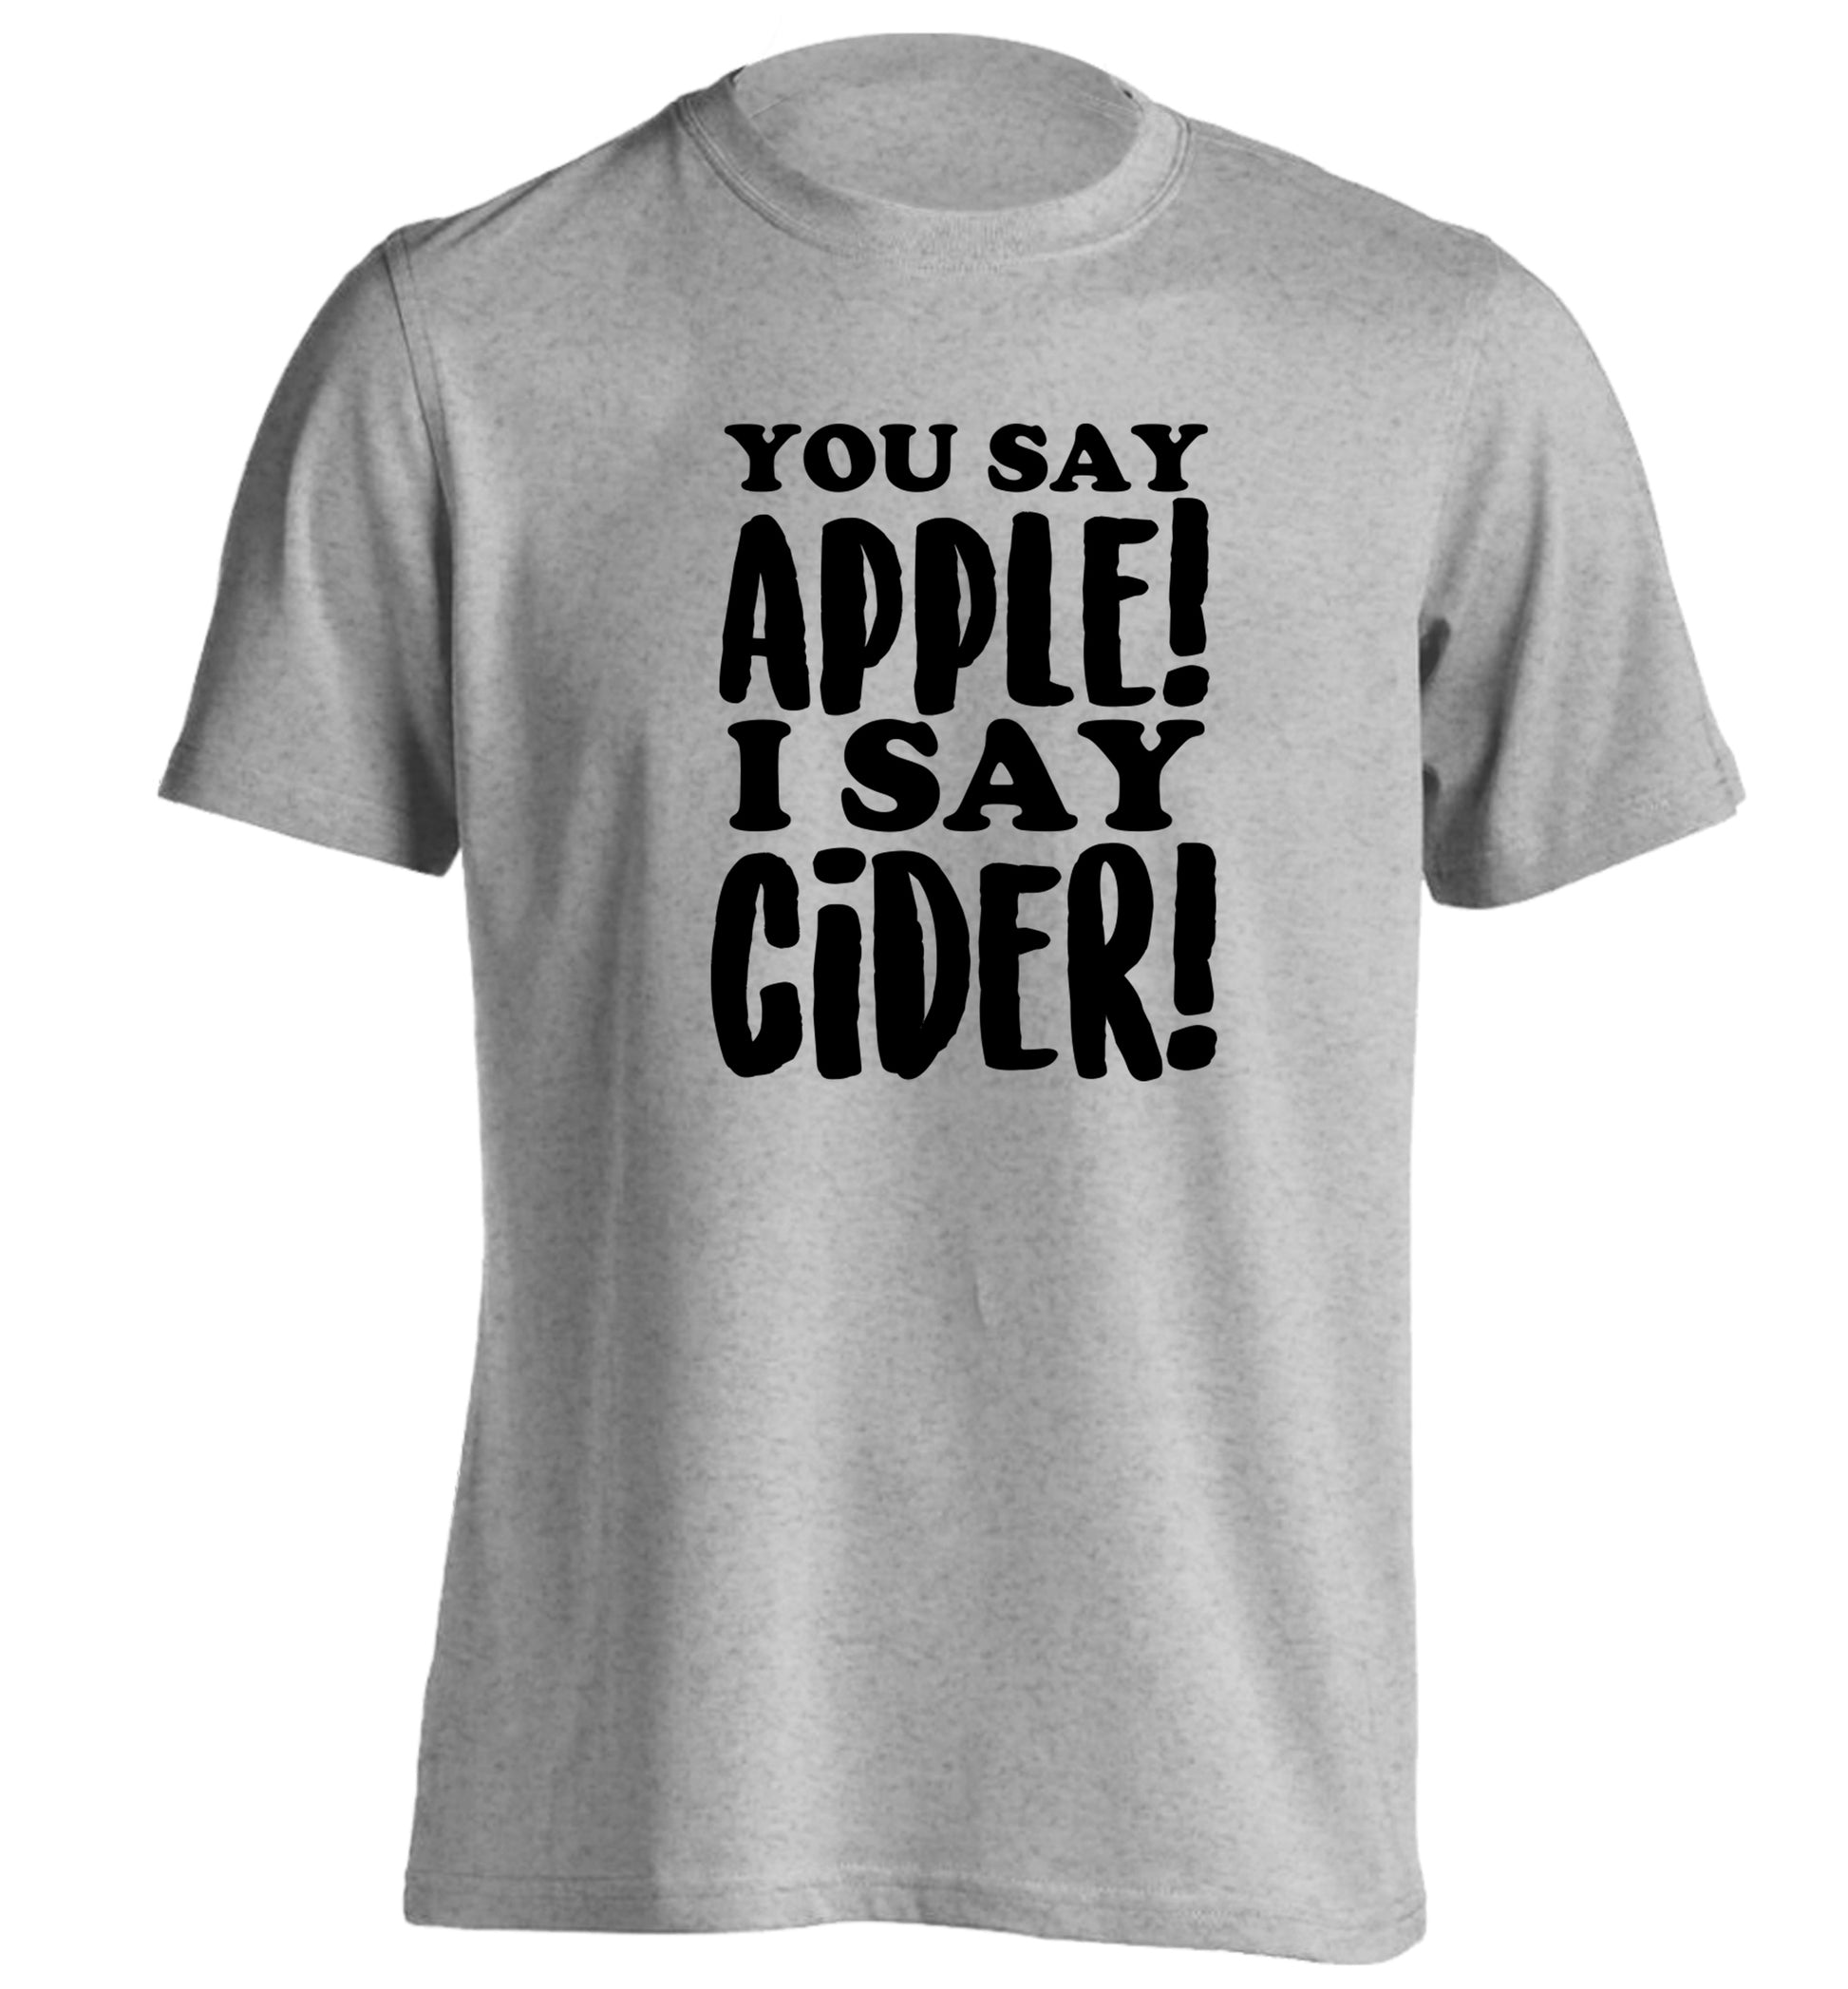 You say apple I say cider! adults unisex grey Tshirt 2XL